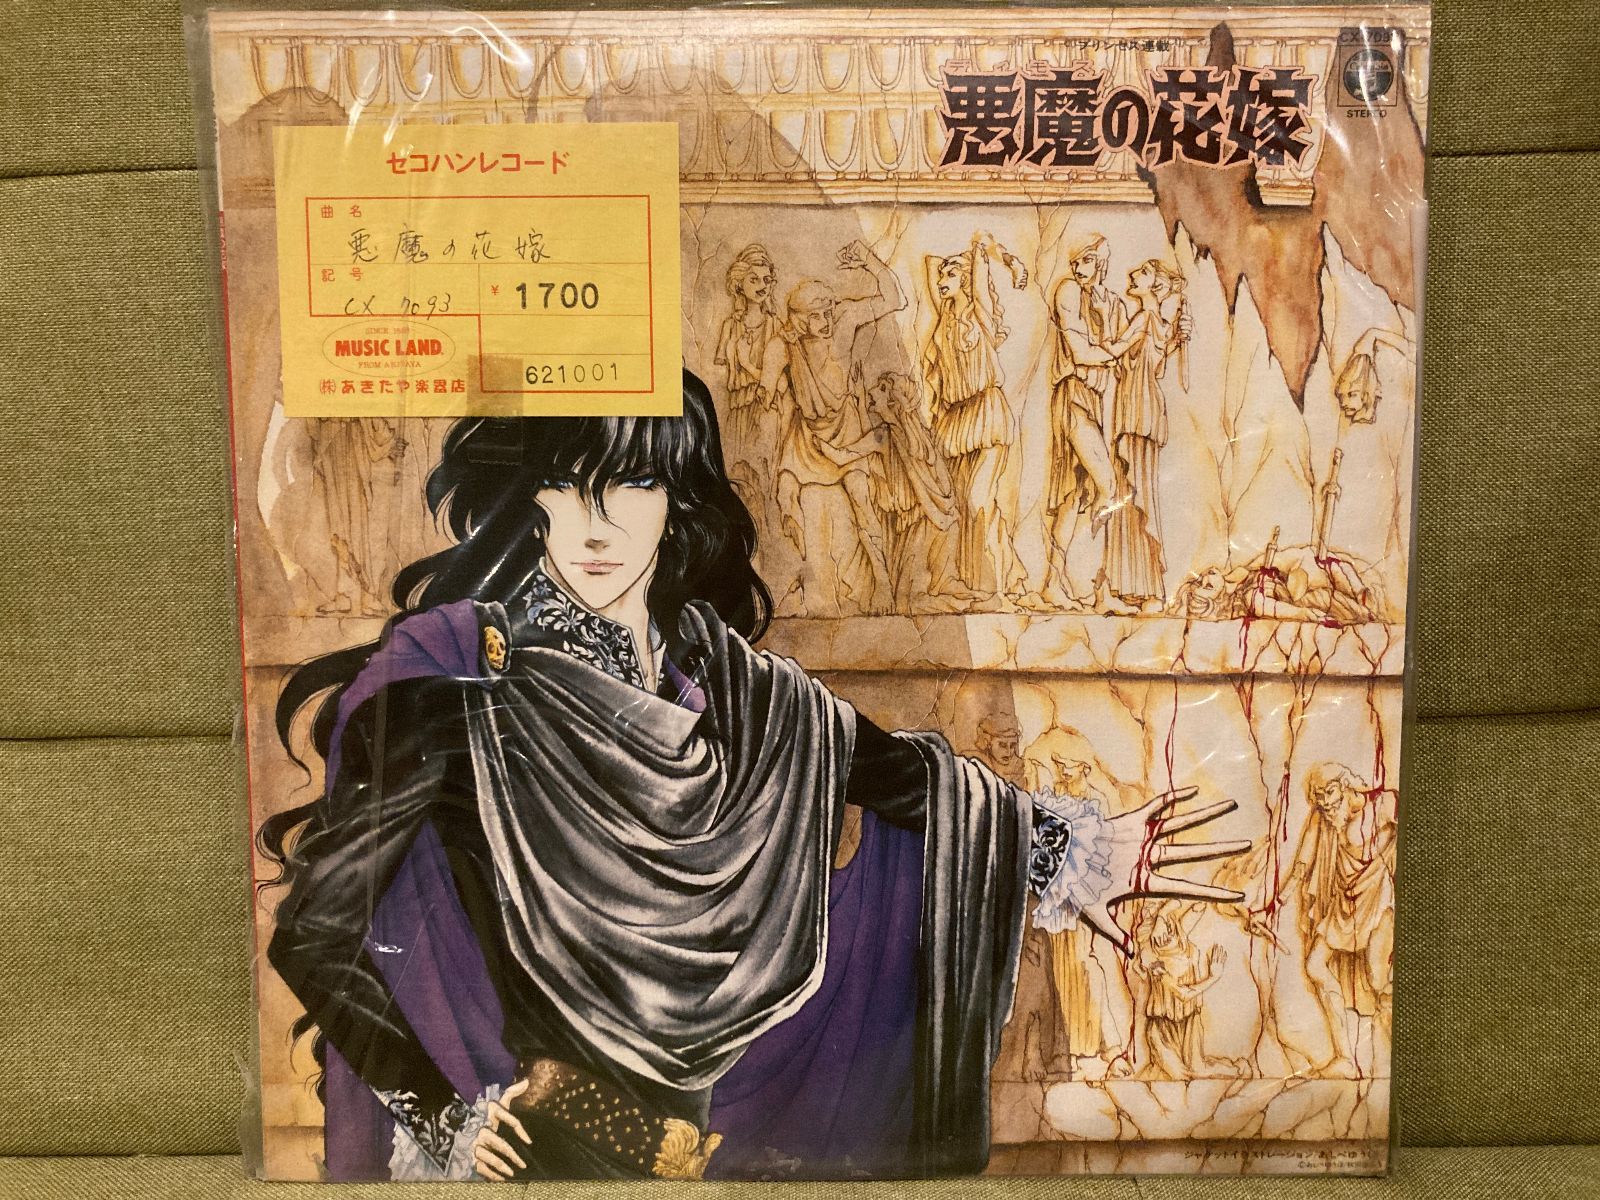 新品即決 レコード 昭和漫画イメージアルバム 悪魔の花嫁 V/A レコード